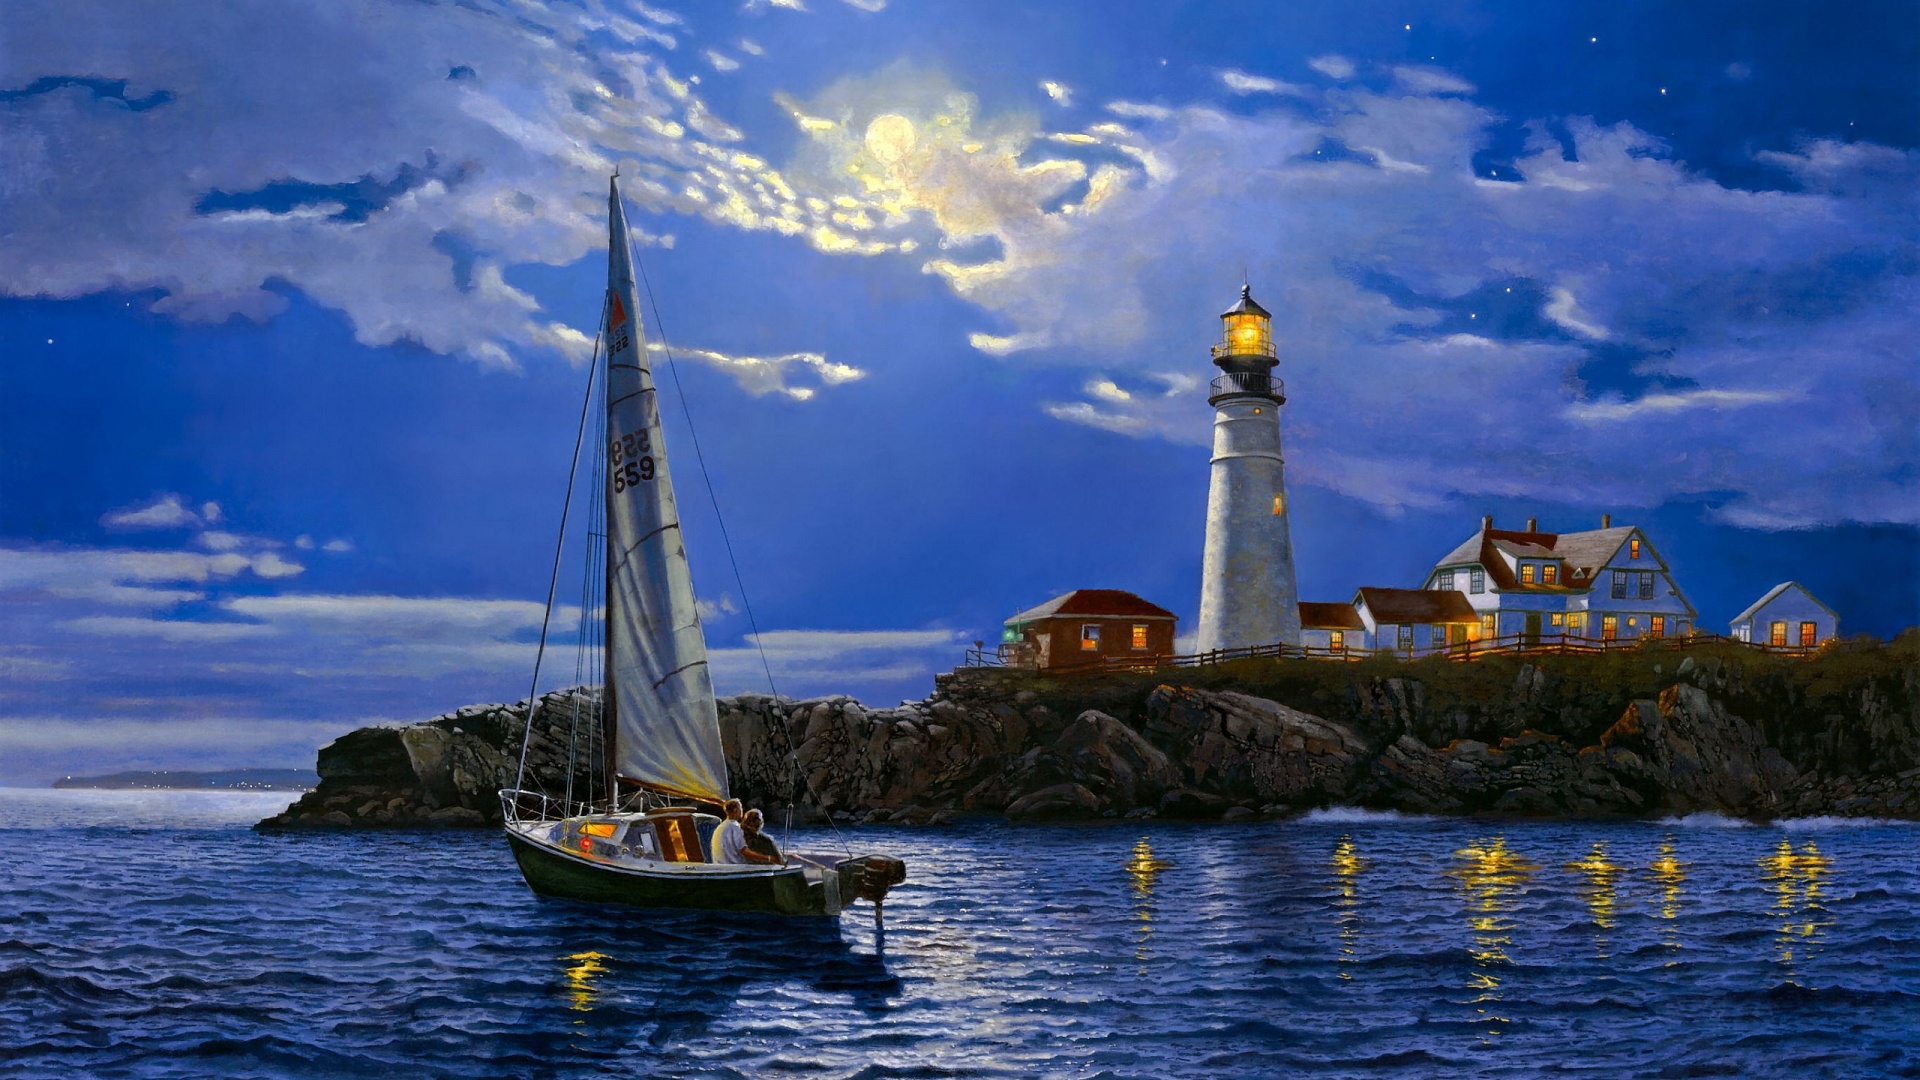 sailboats at night